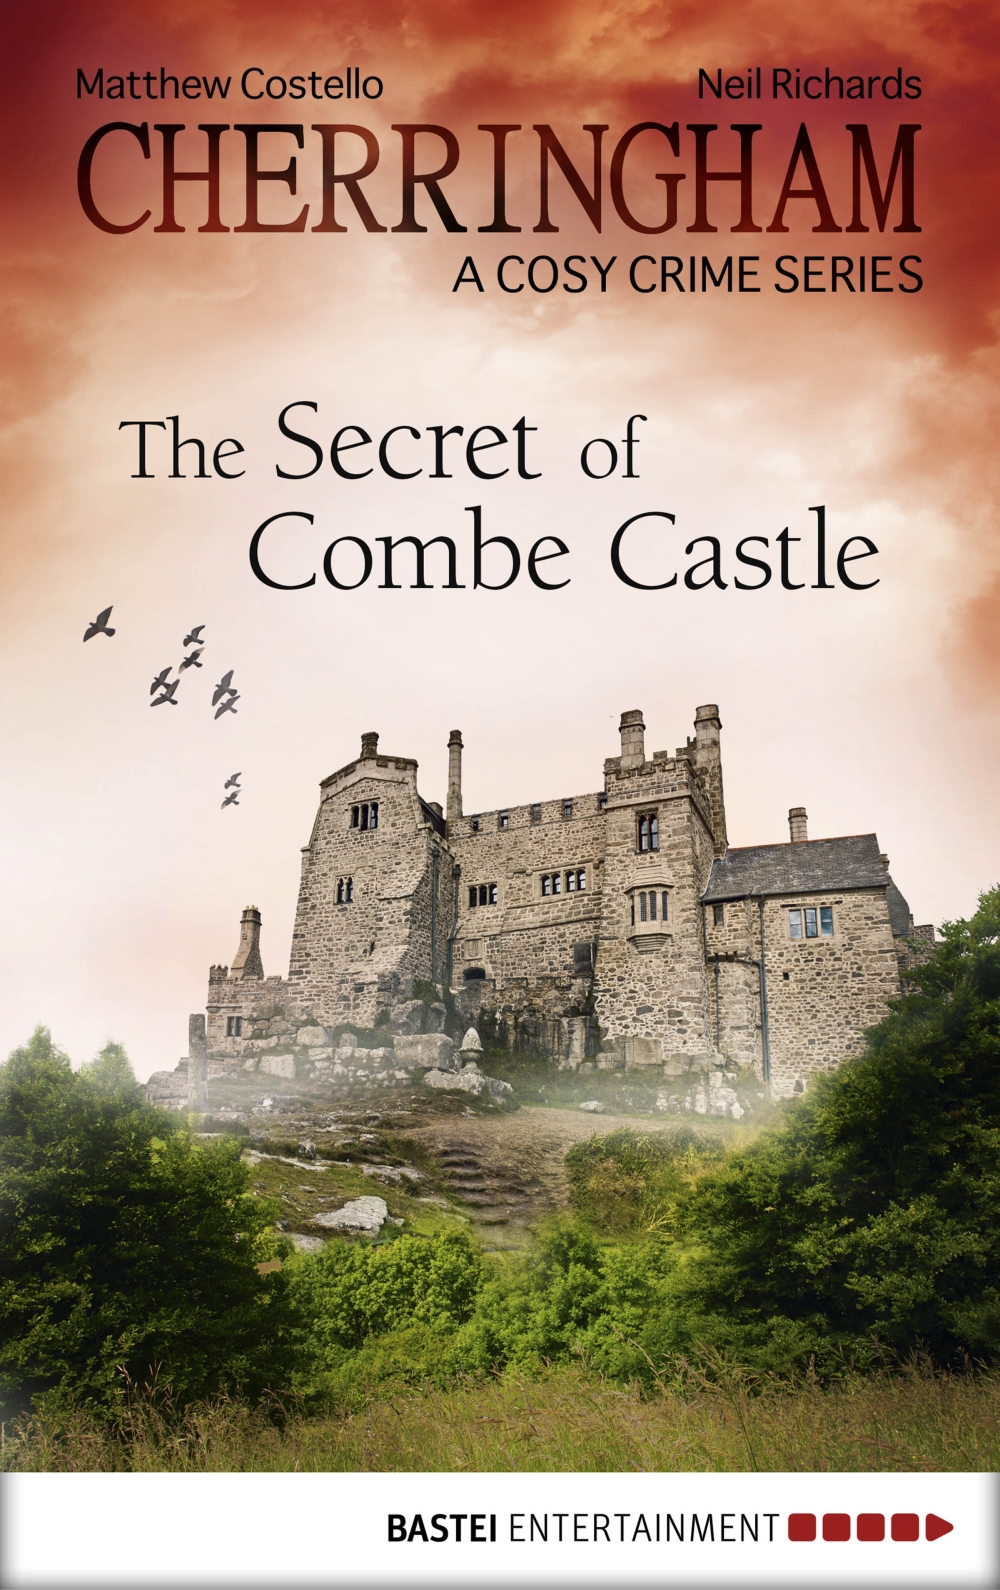 Cherringham--The Secret of Combe Castle (2015) by Neil Richards